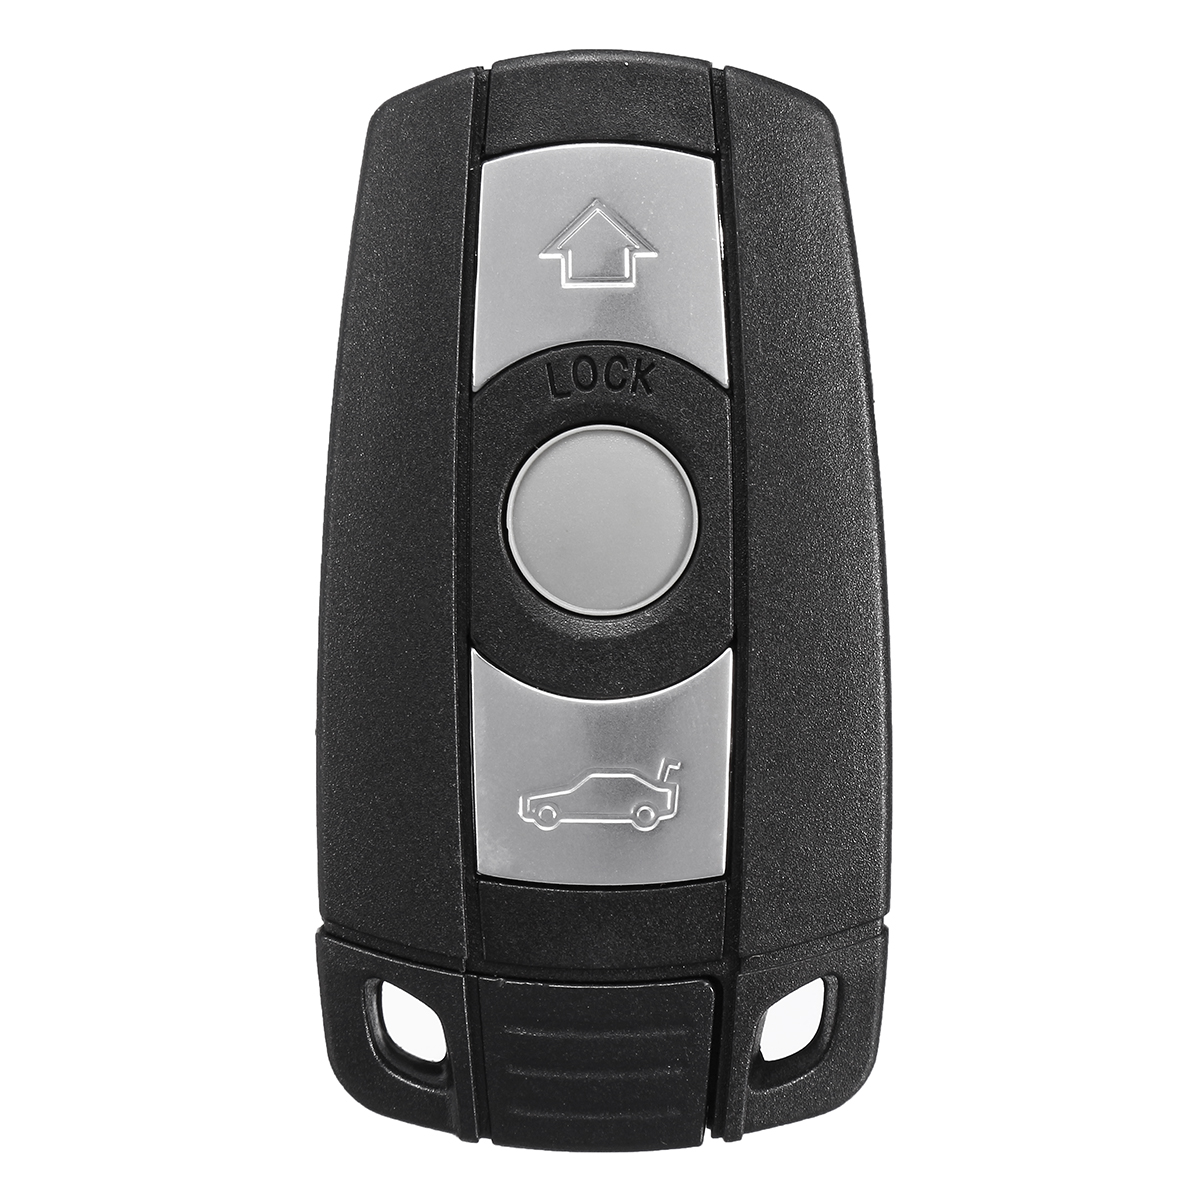 3 Buttons Remote Key Fob with Key for BMW 1 3 5 6 7 Series E90 E92 E93